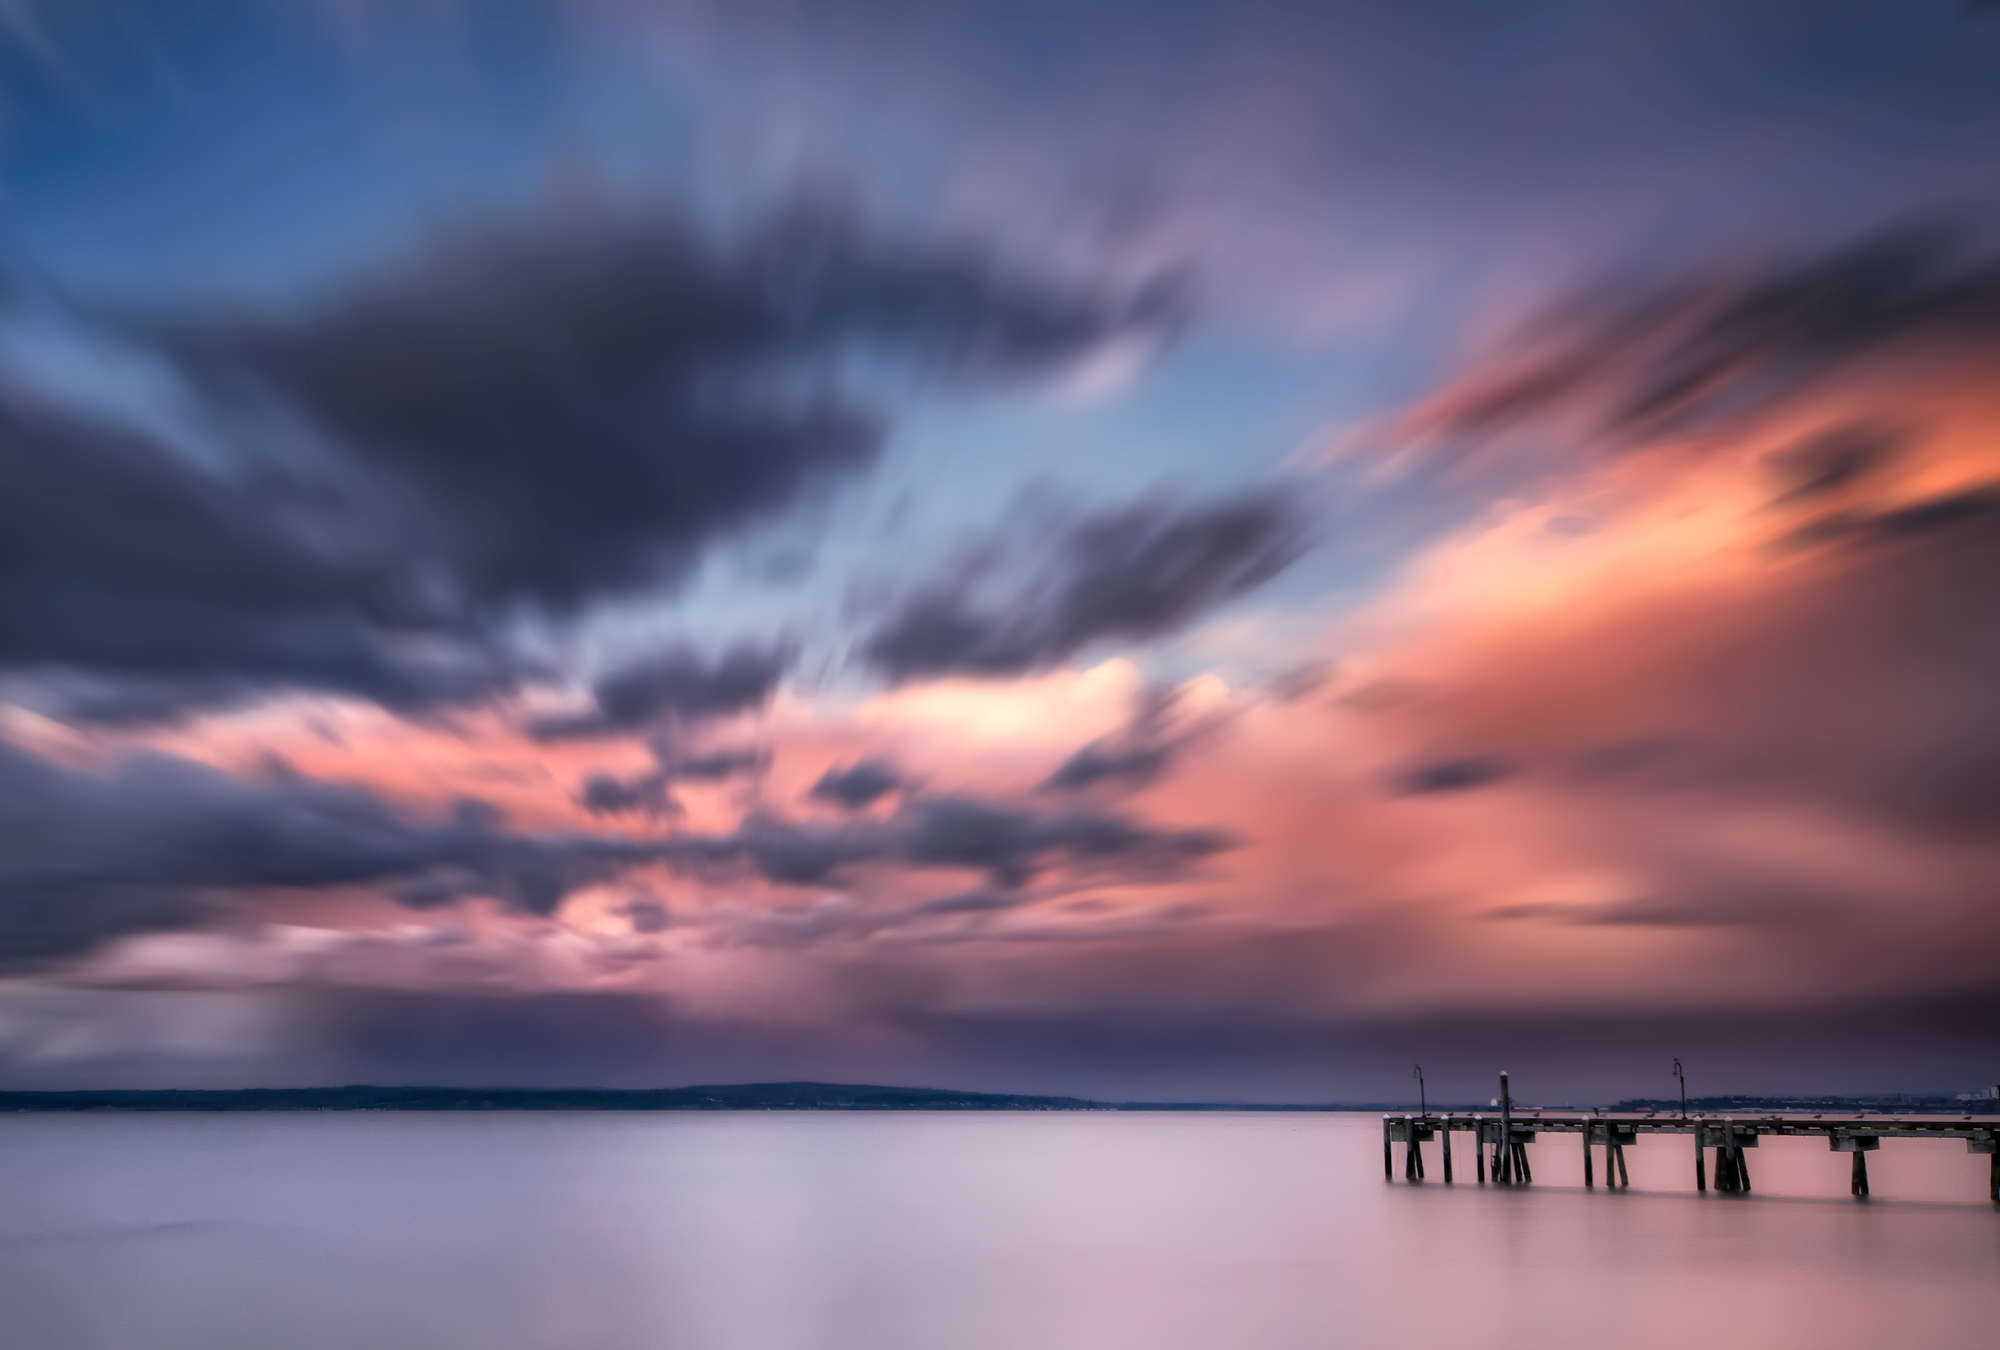             Fototapete Küstenlandschaft mit Steg im Wasser und buntem Wolkenspiel
        